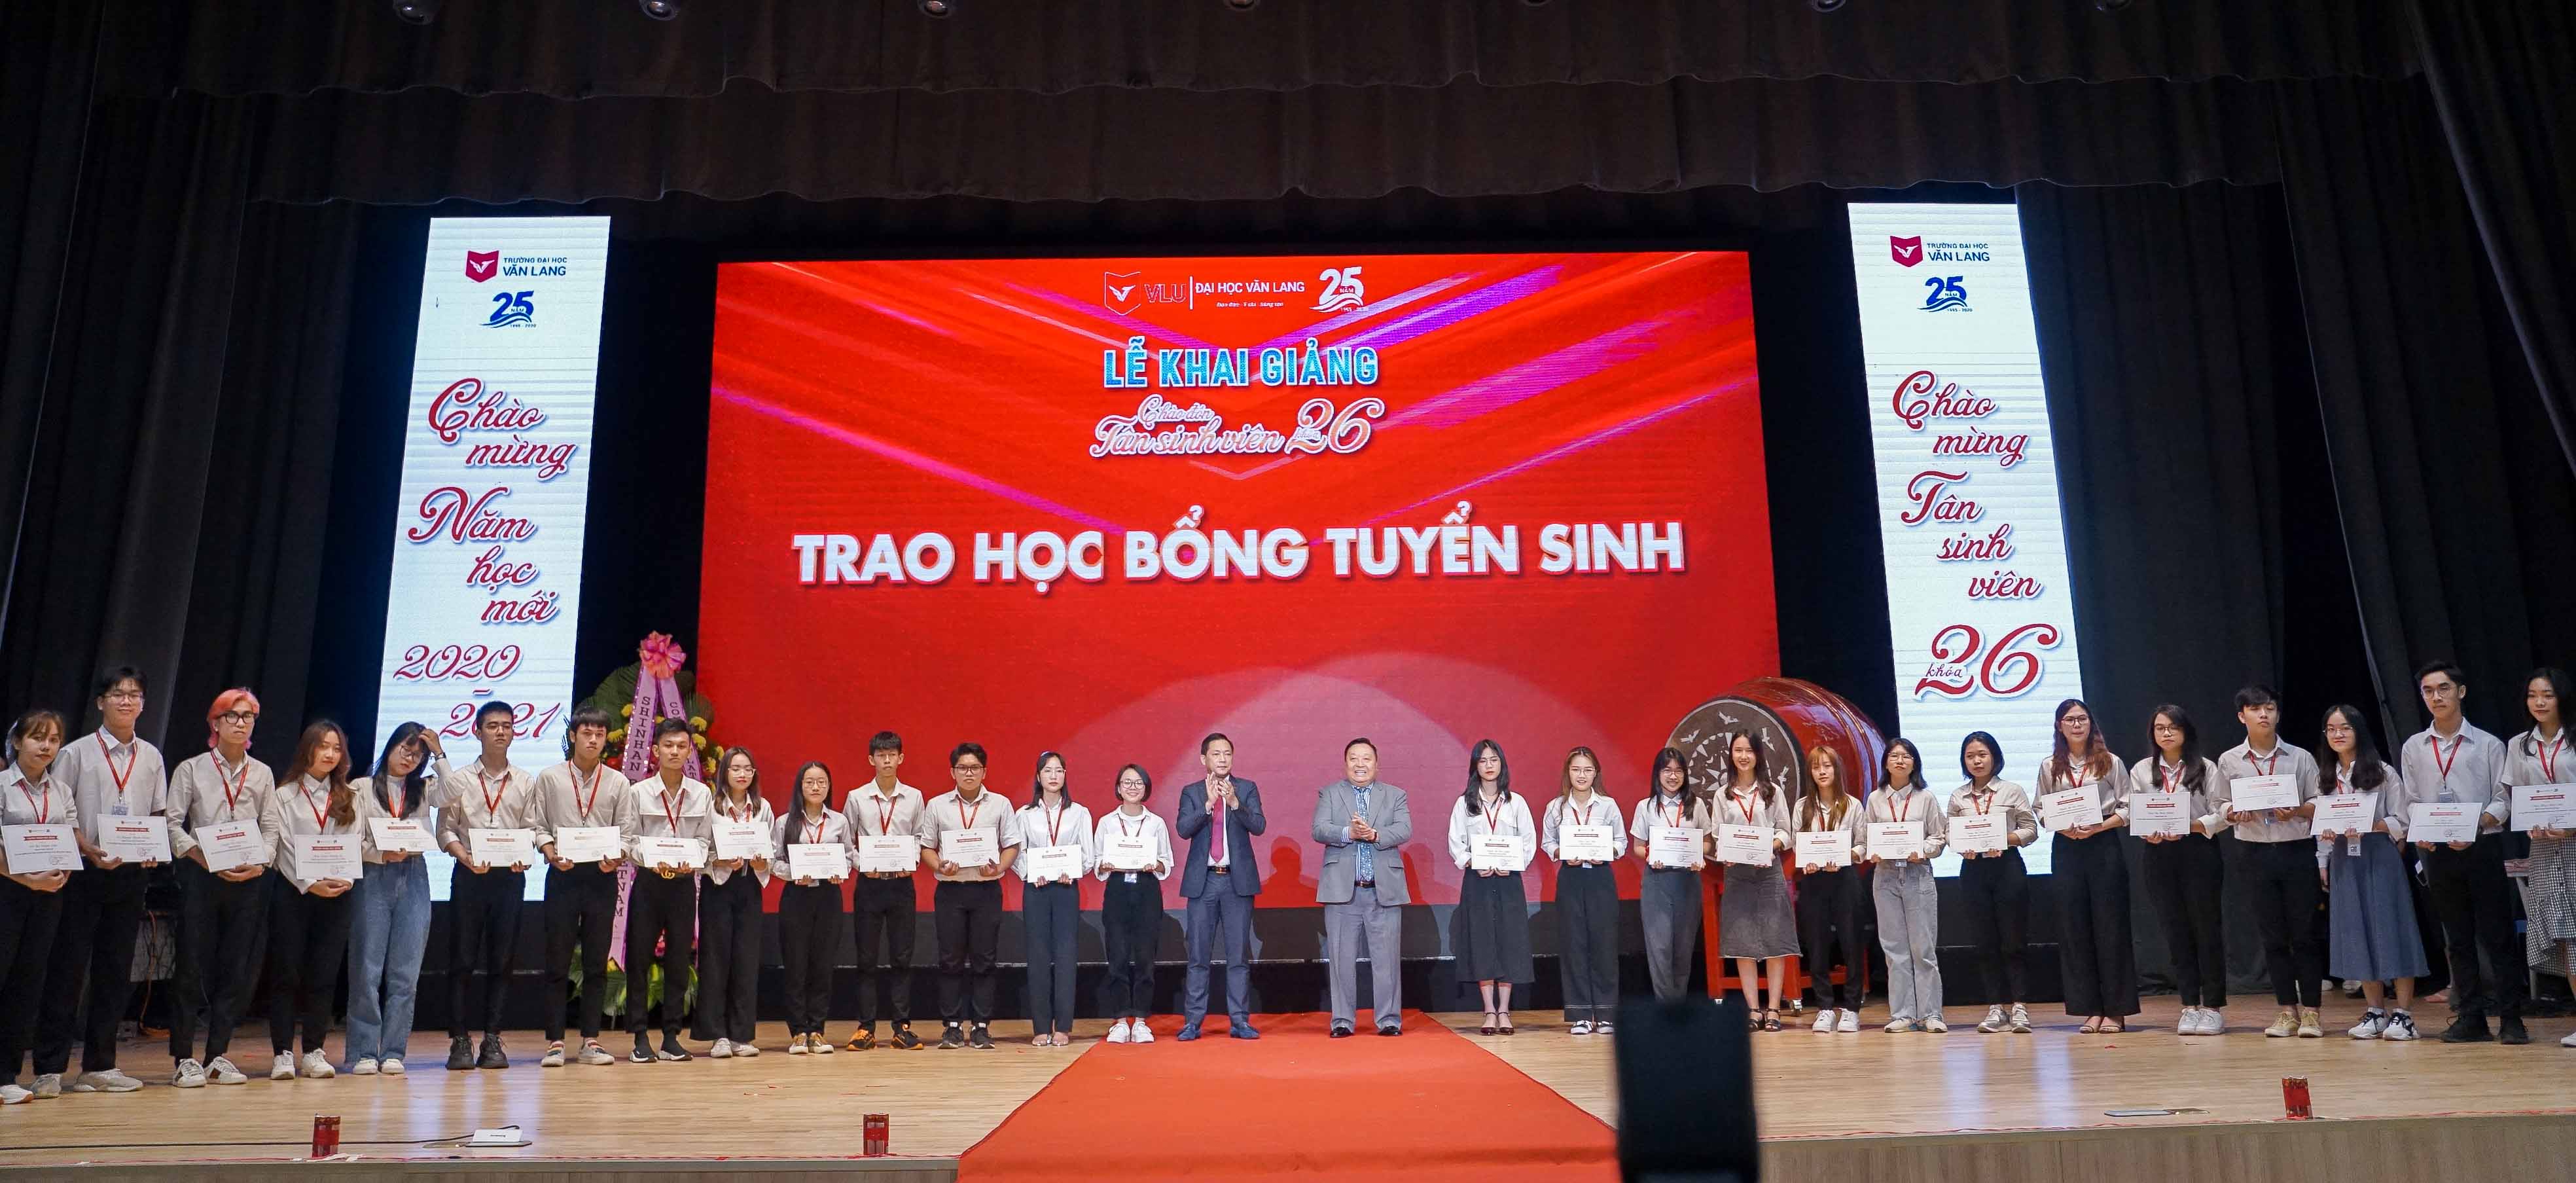 Đại học Văn Lang đã trao 10 tỷ đồng học bổng cho tân sinh viên khóa 26 trong Lễ khai giảng năm 2020